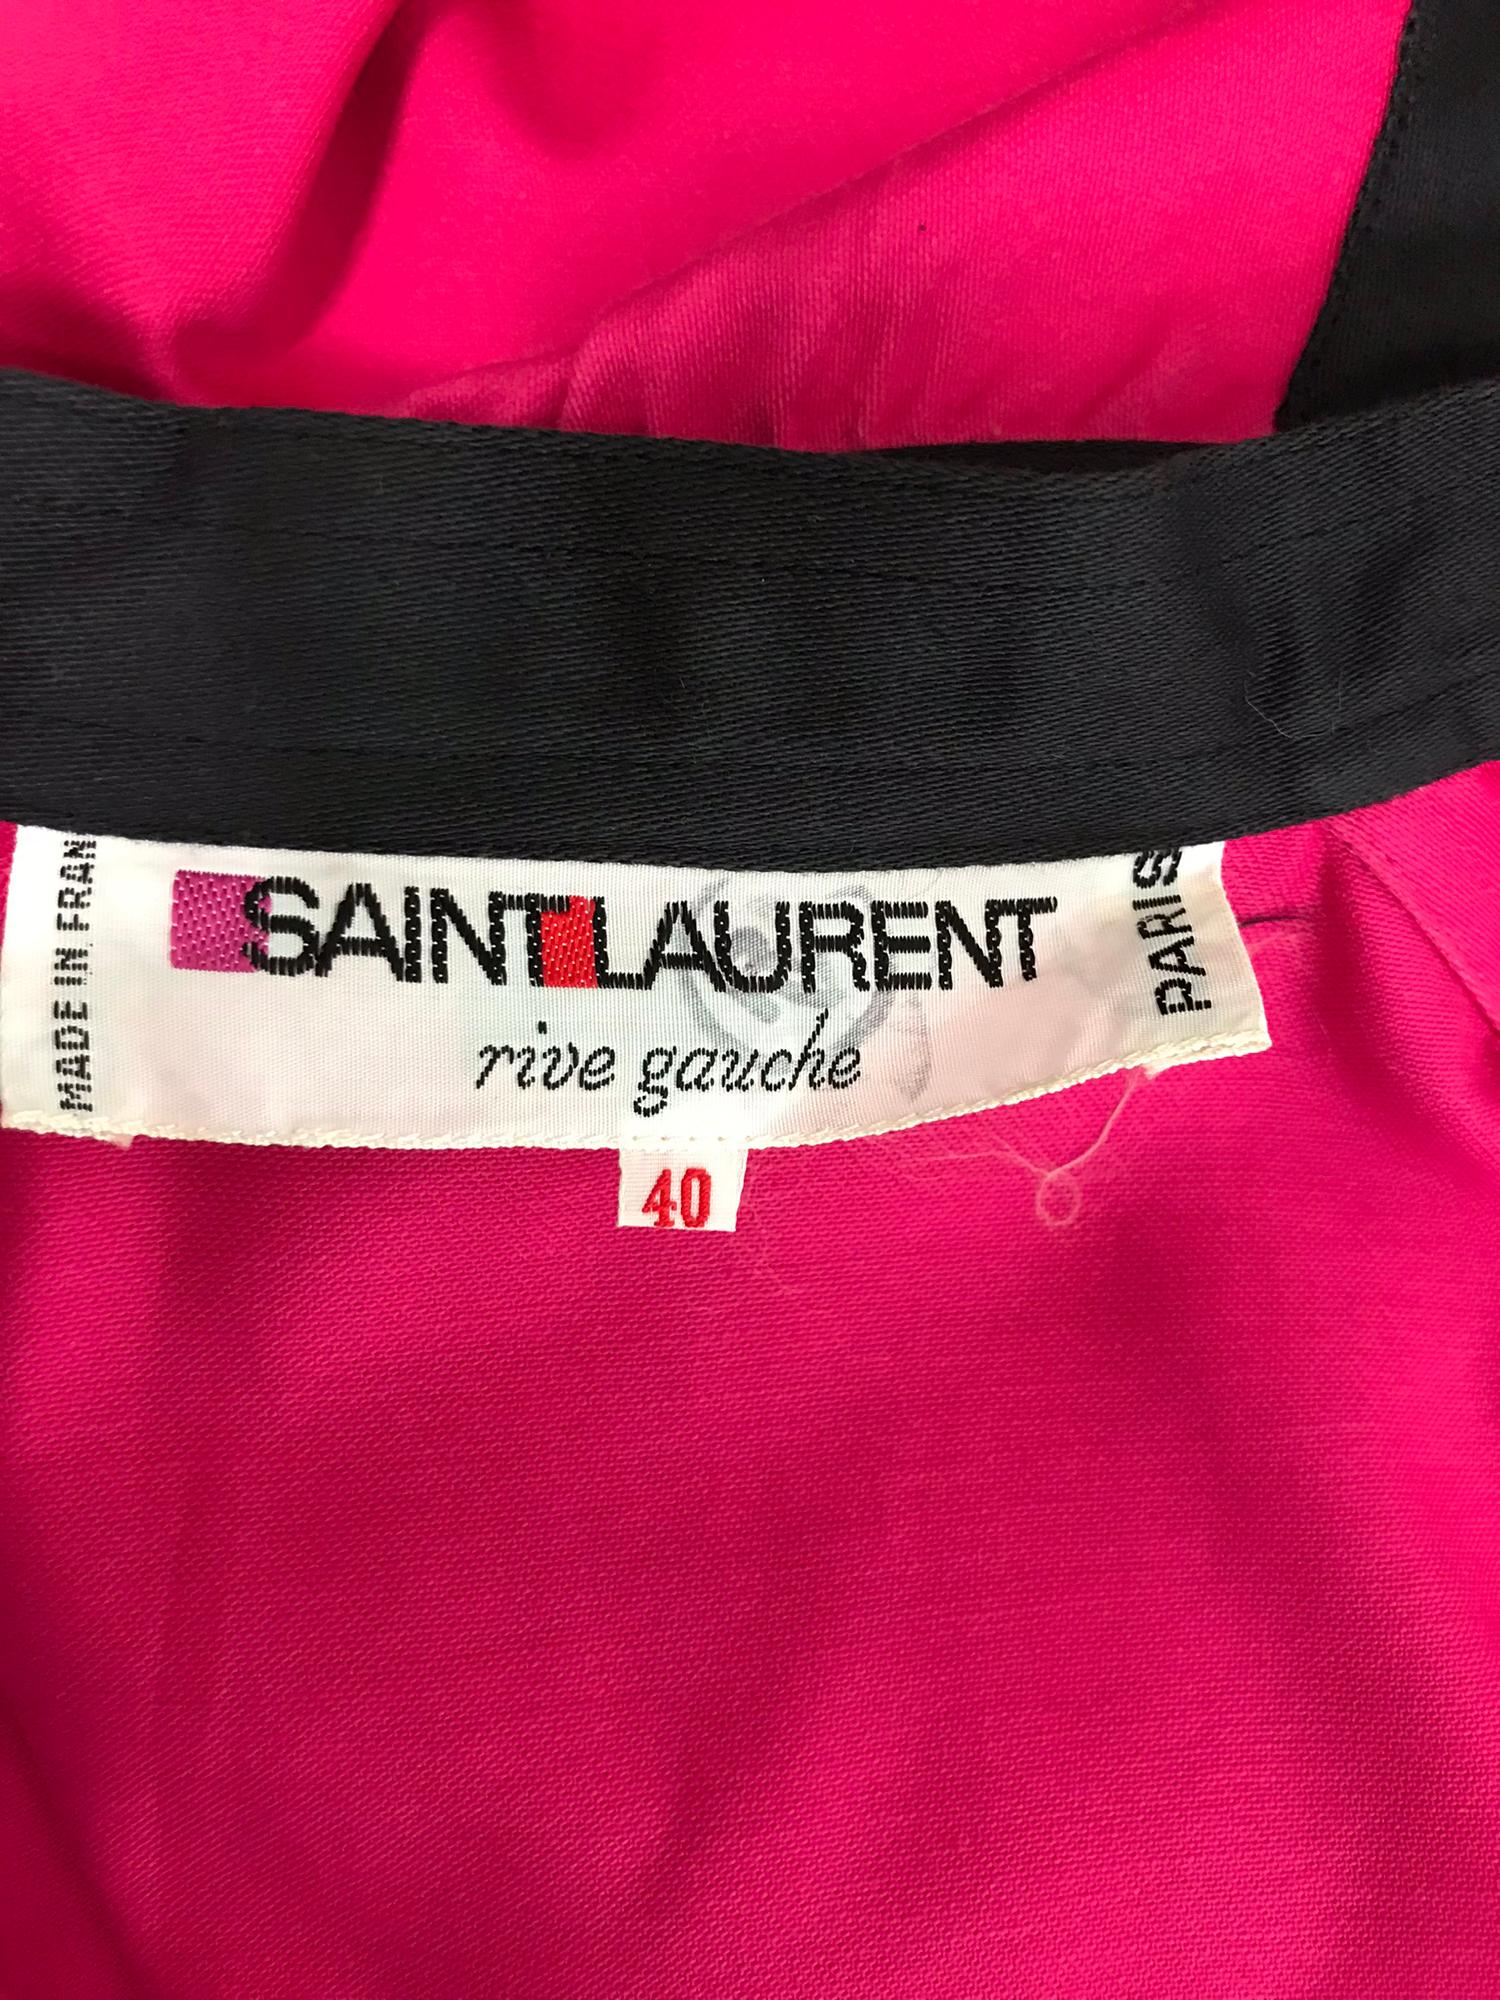 Yves Saint Laurent Hot Pink Colour Block Jacket 1970s For Sale 8